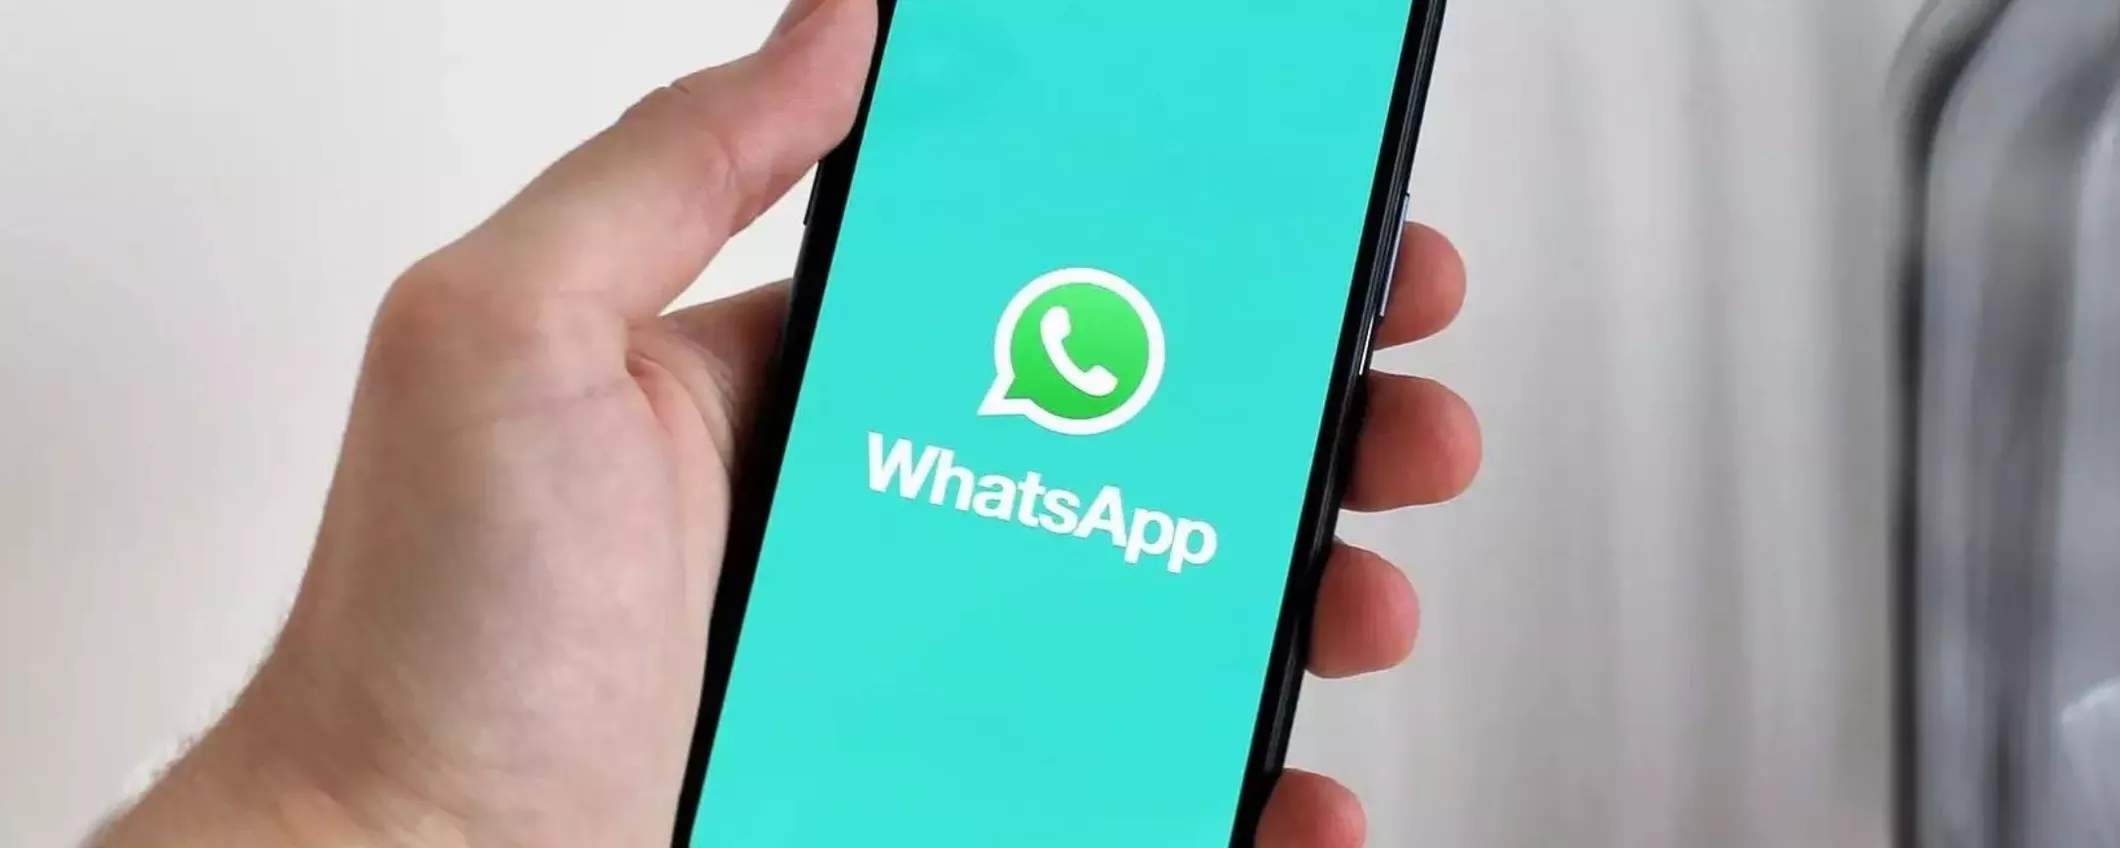 WhatsApp: come programmare l'invio di messaggi su iPhone